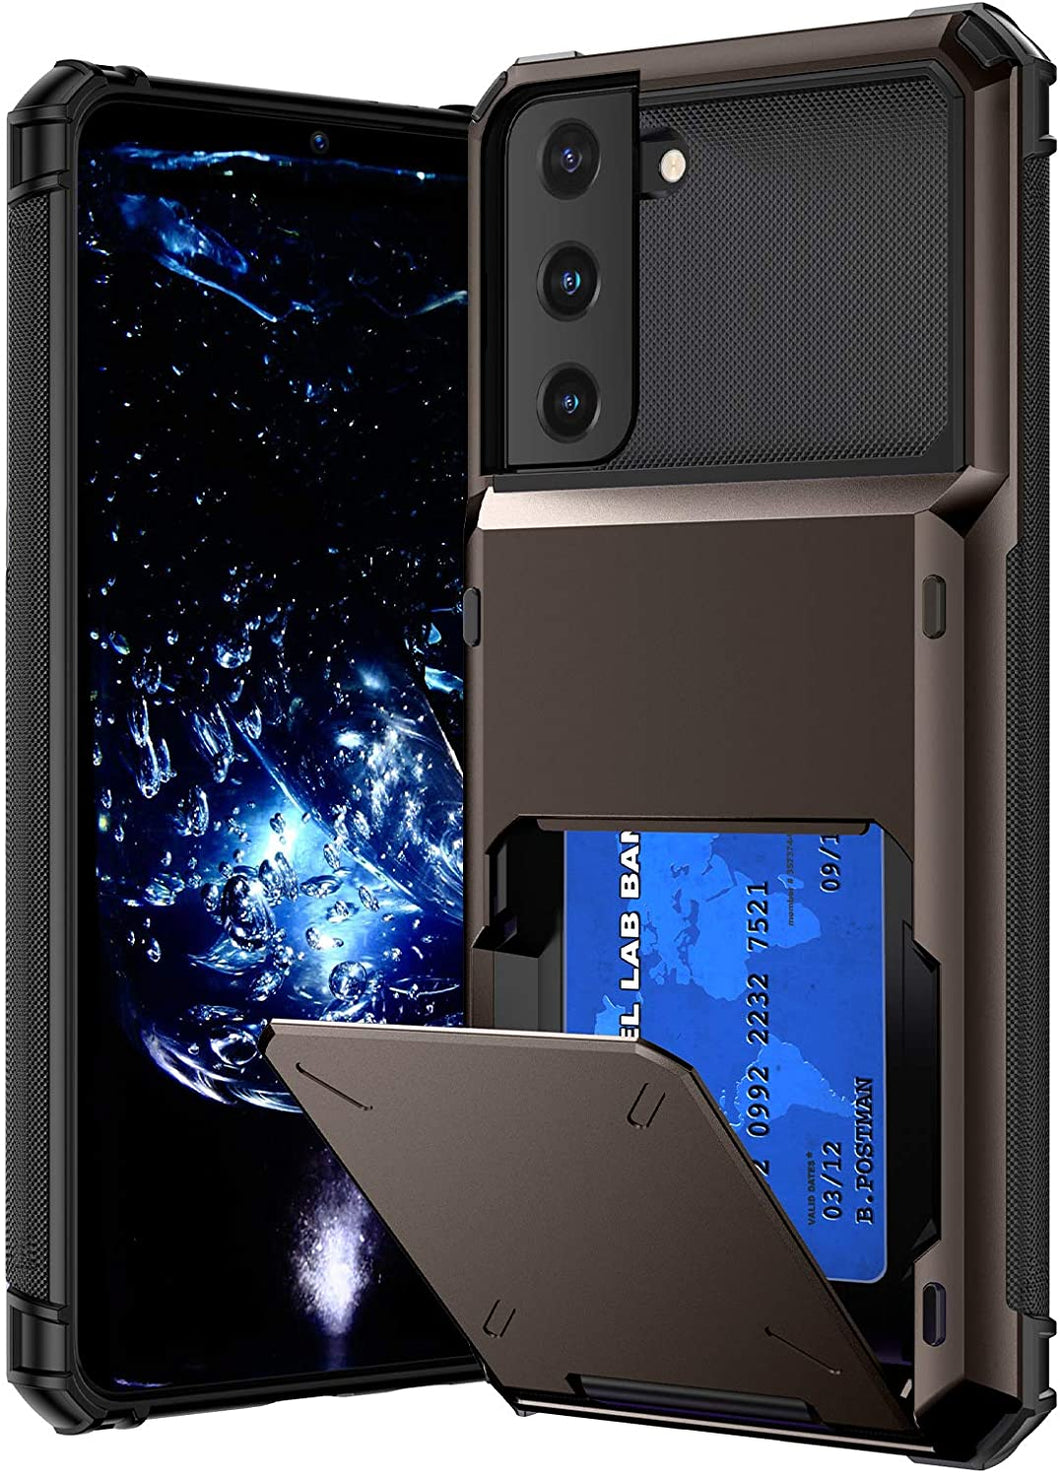 [Casekis] Travel Wallet Folder Card Slot Holder Case For Samsung S21/S21+ - Casekis